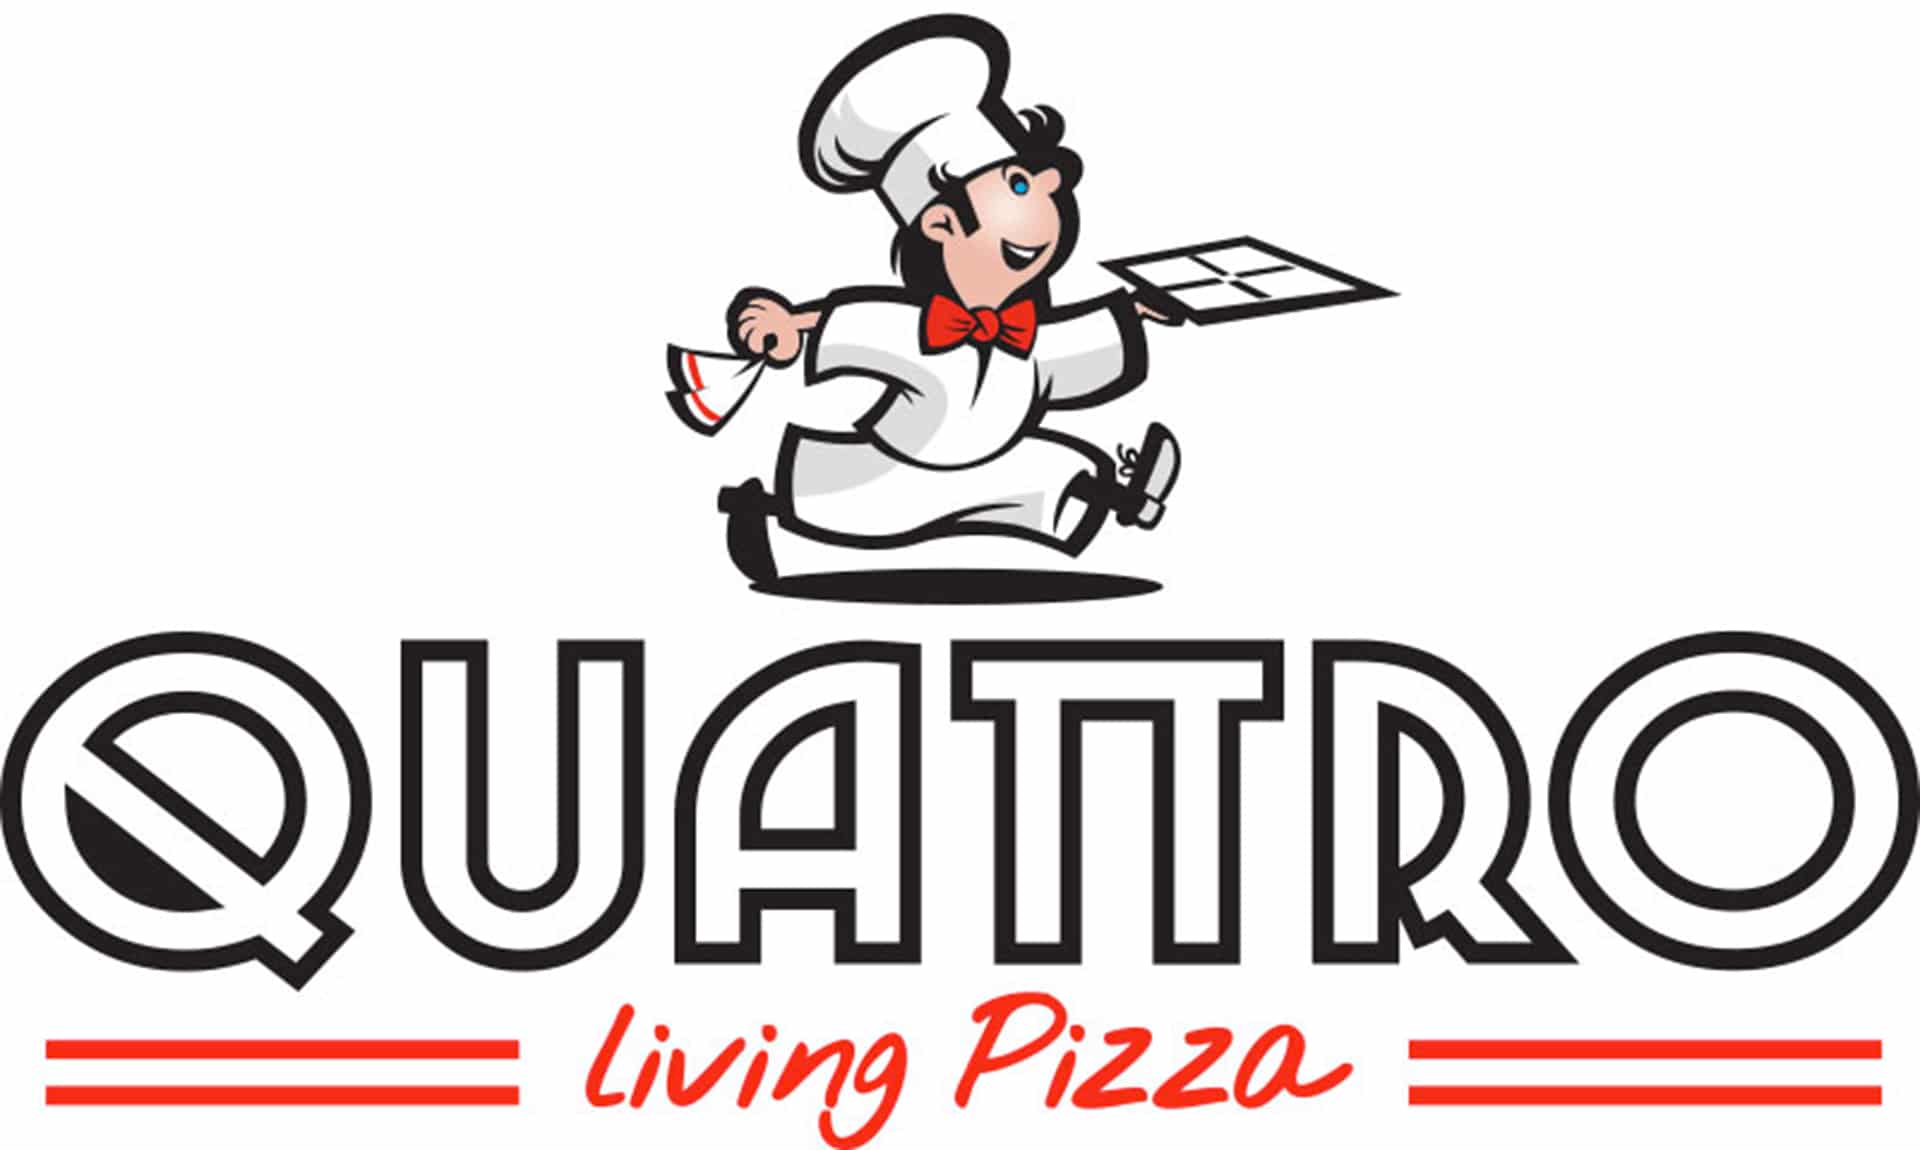 création du logo pour la pizzeria Quatro